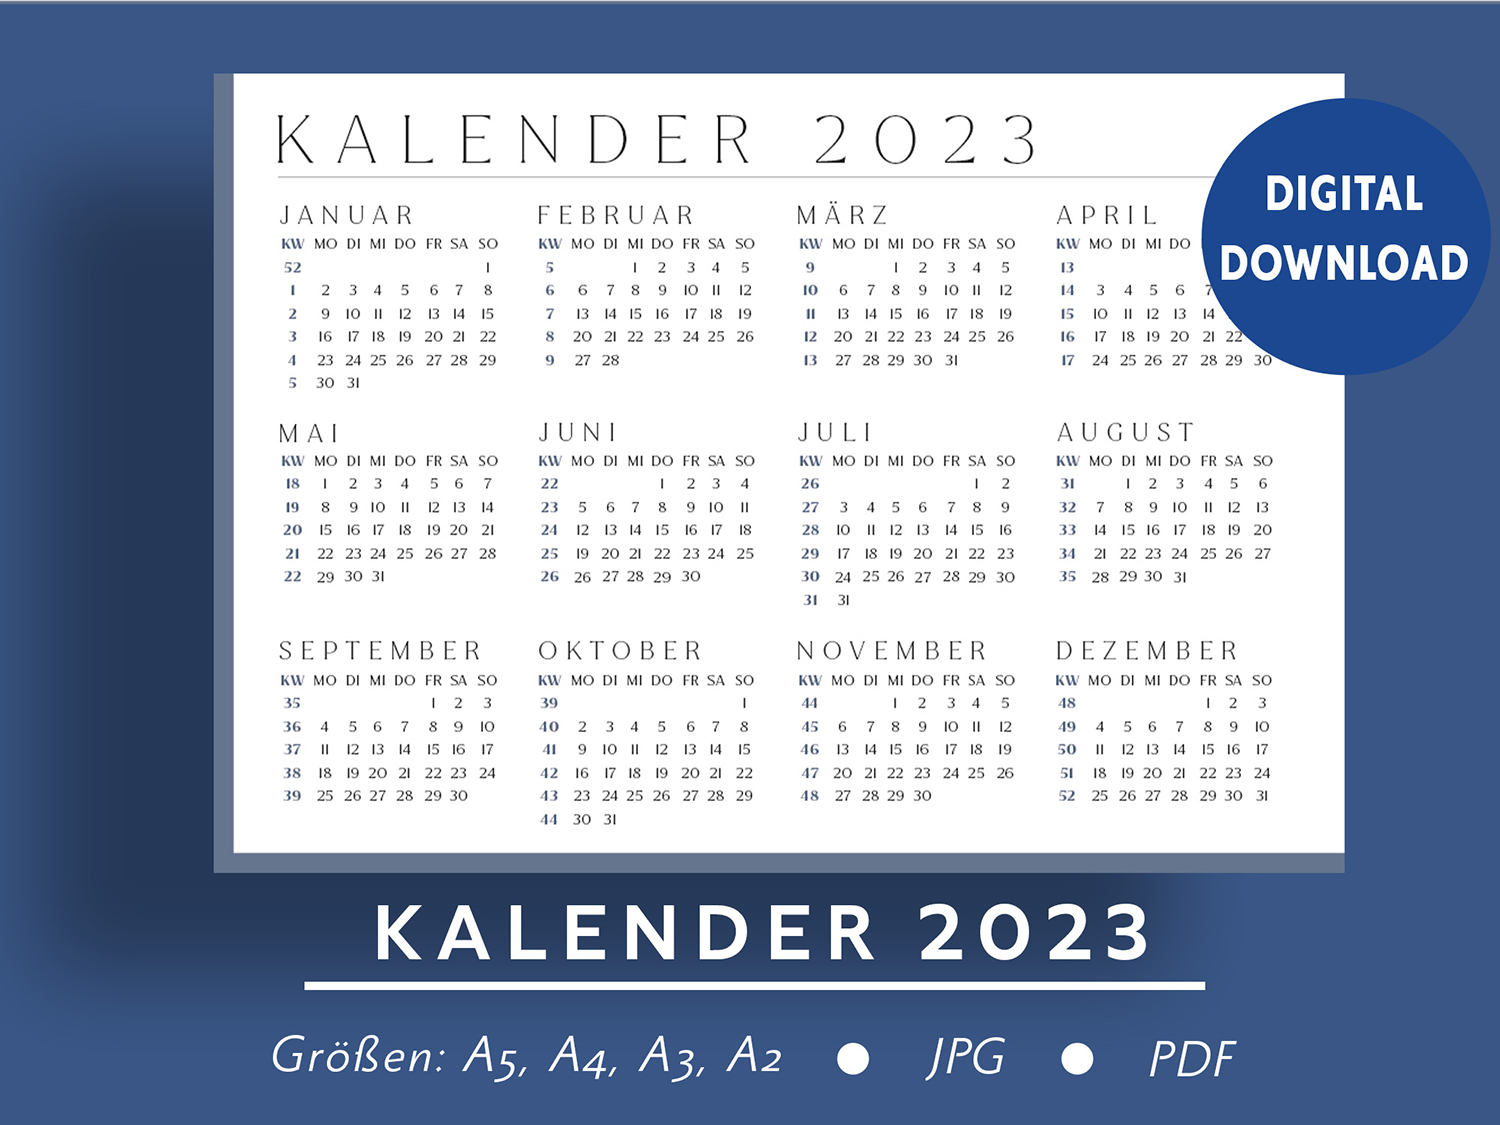 Kalender-2023-ausdrucken-Blau